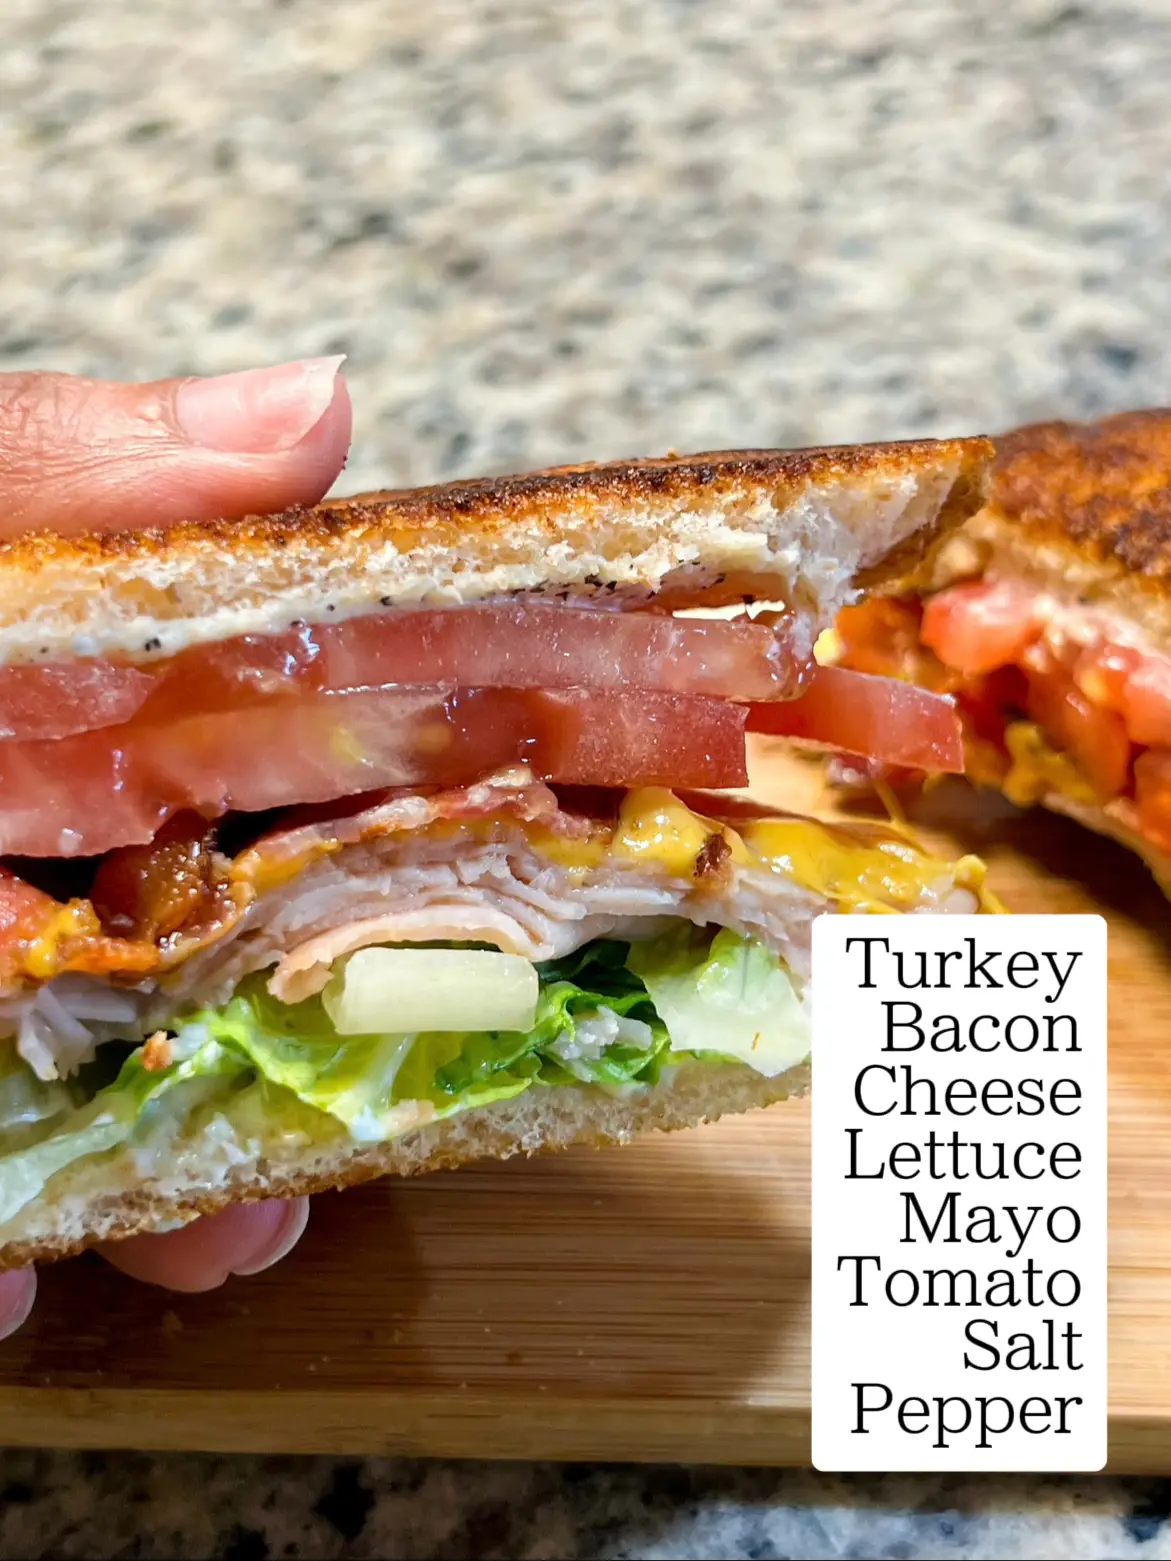 Scratch-Made Sandwich Shop Bona Fide Deluxe Now Open in Edgewood